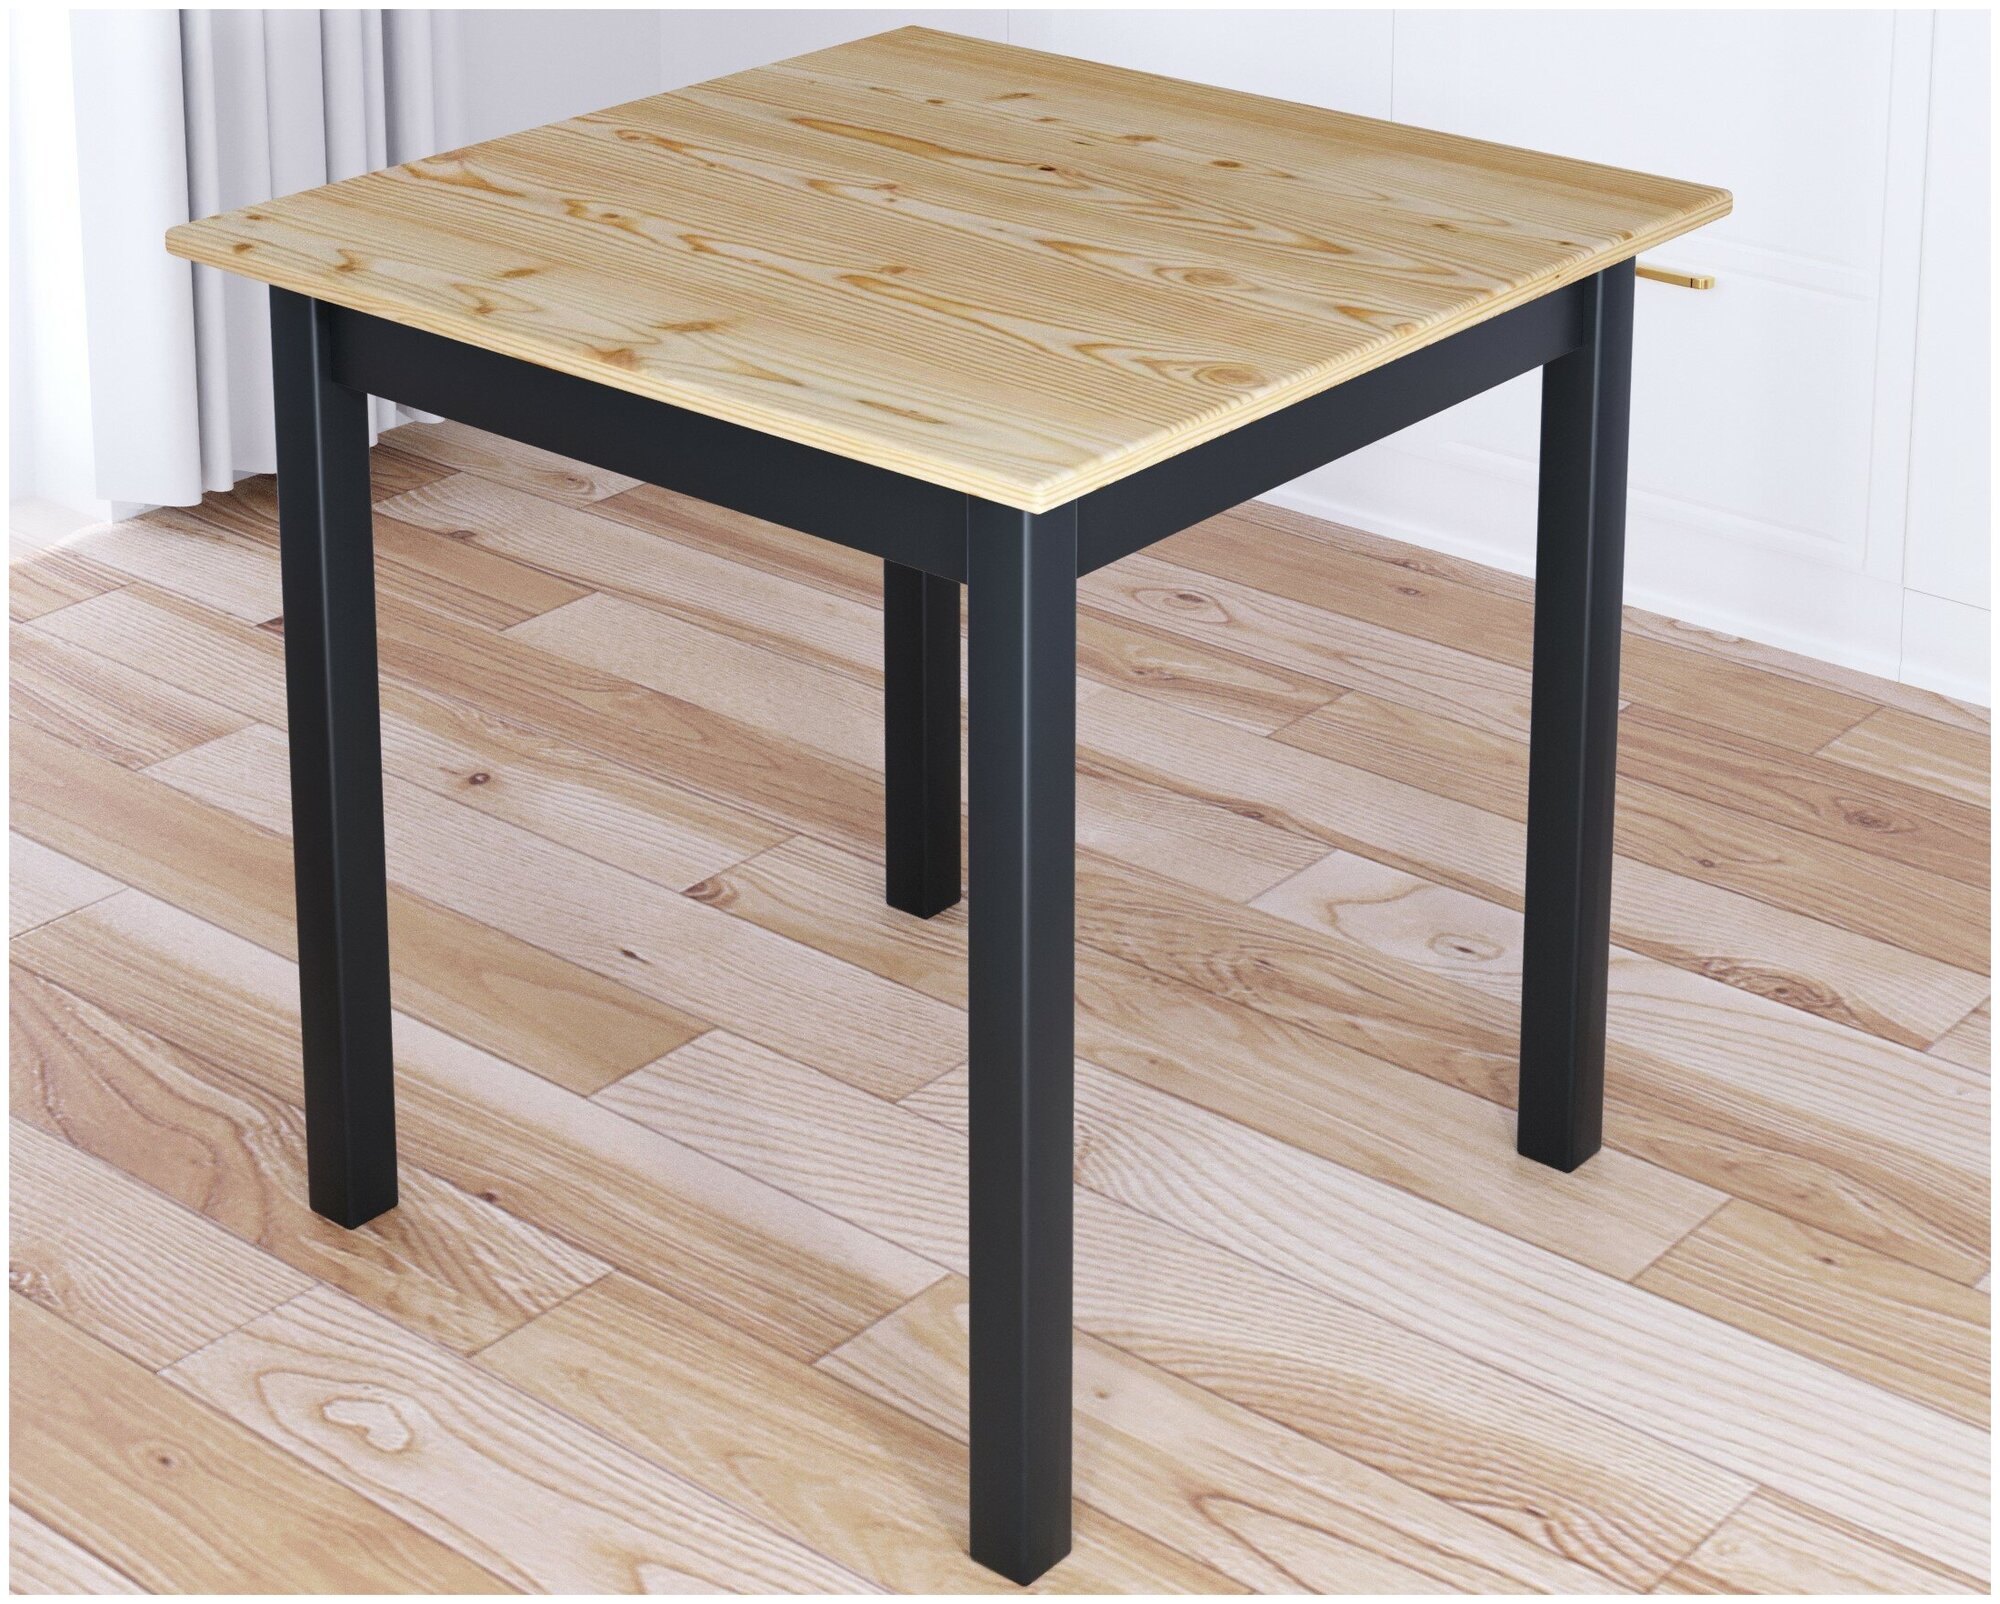 Стол кухонный Классика квадратный с лакированной столешницей 20 мм и ножками цвета антрацит, 60х60х75 см